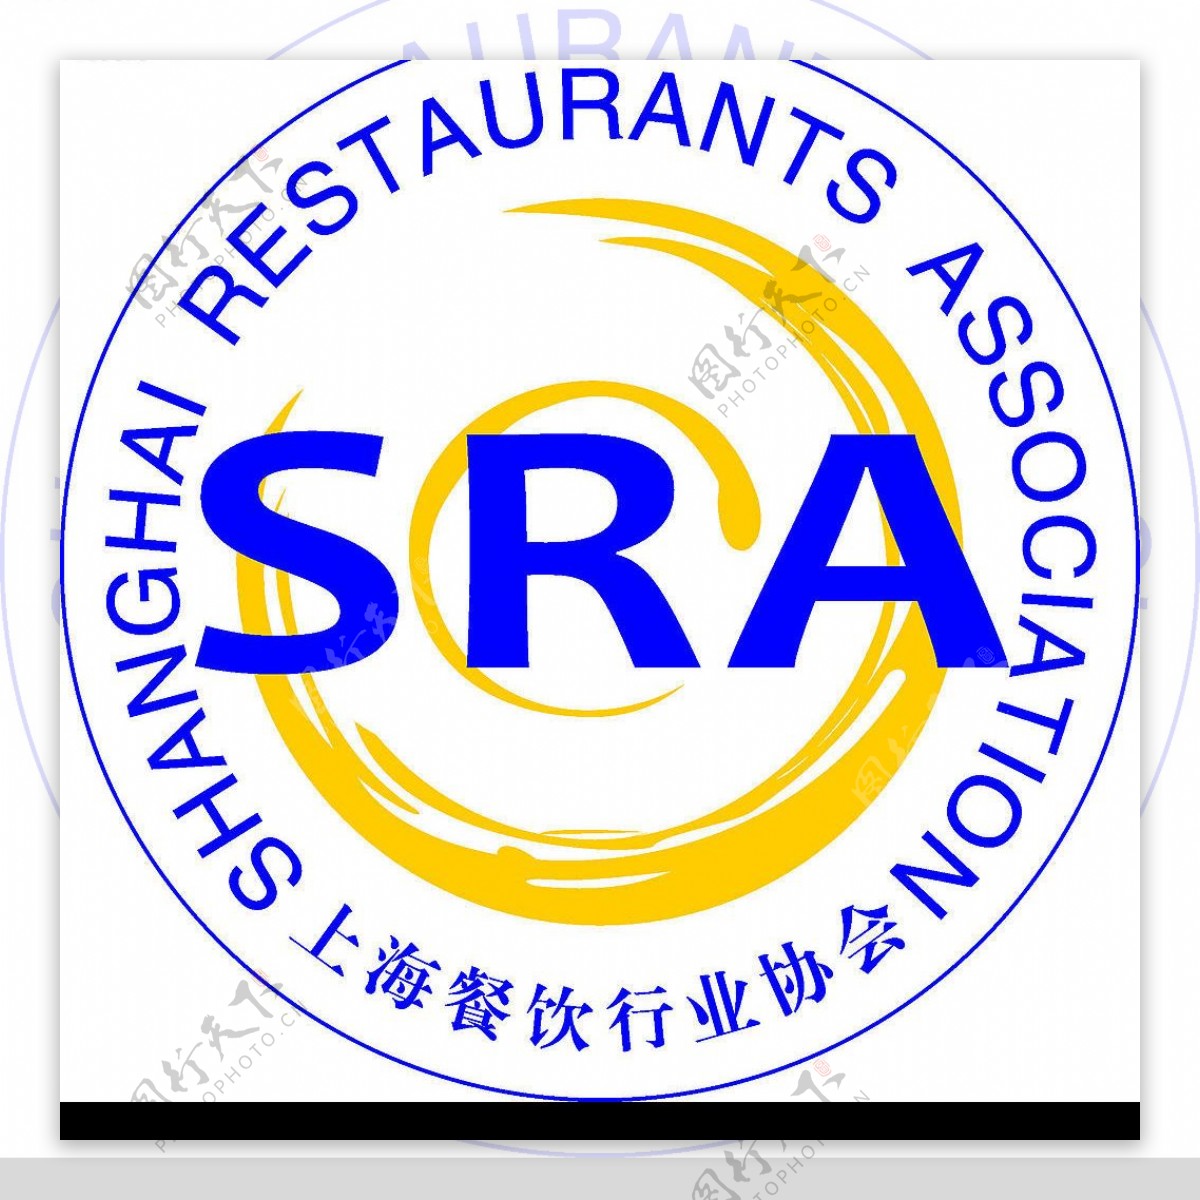 上海餐饮行业协会标志图片